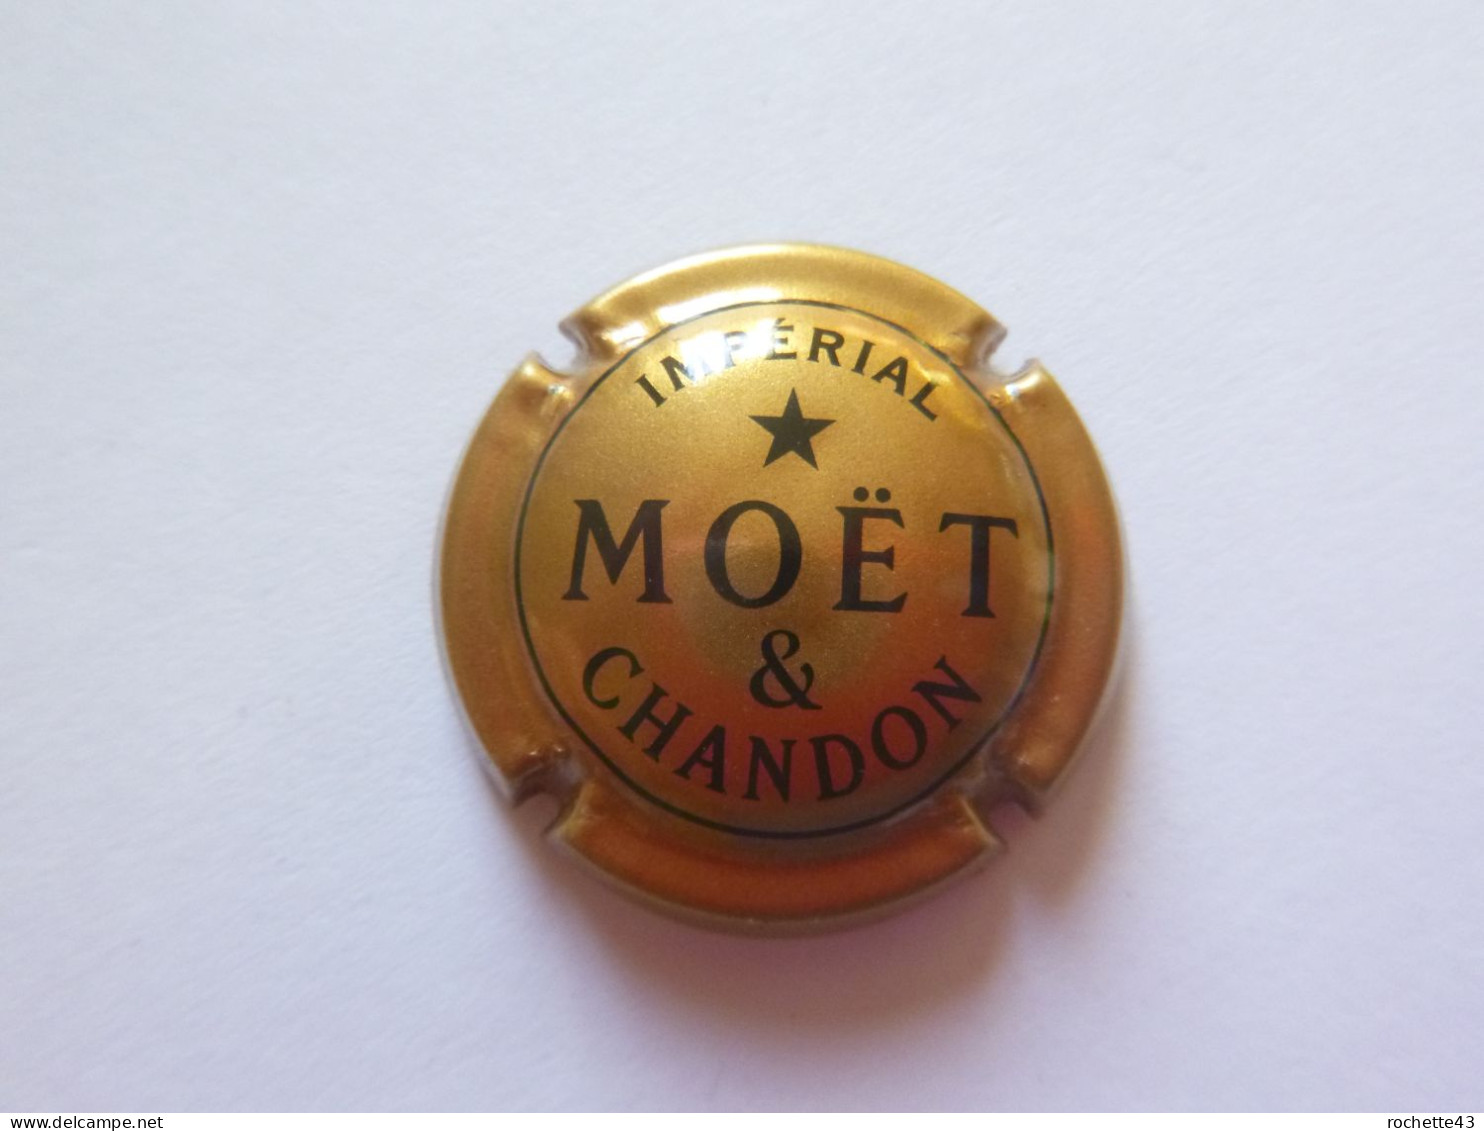 Capsule Plaque Muselet De Champagne - MOËT Et Chandon - Impérial - Moet Et Chandon